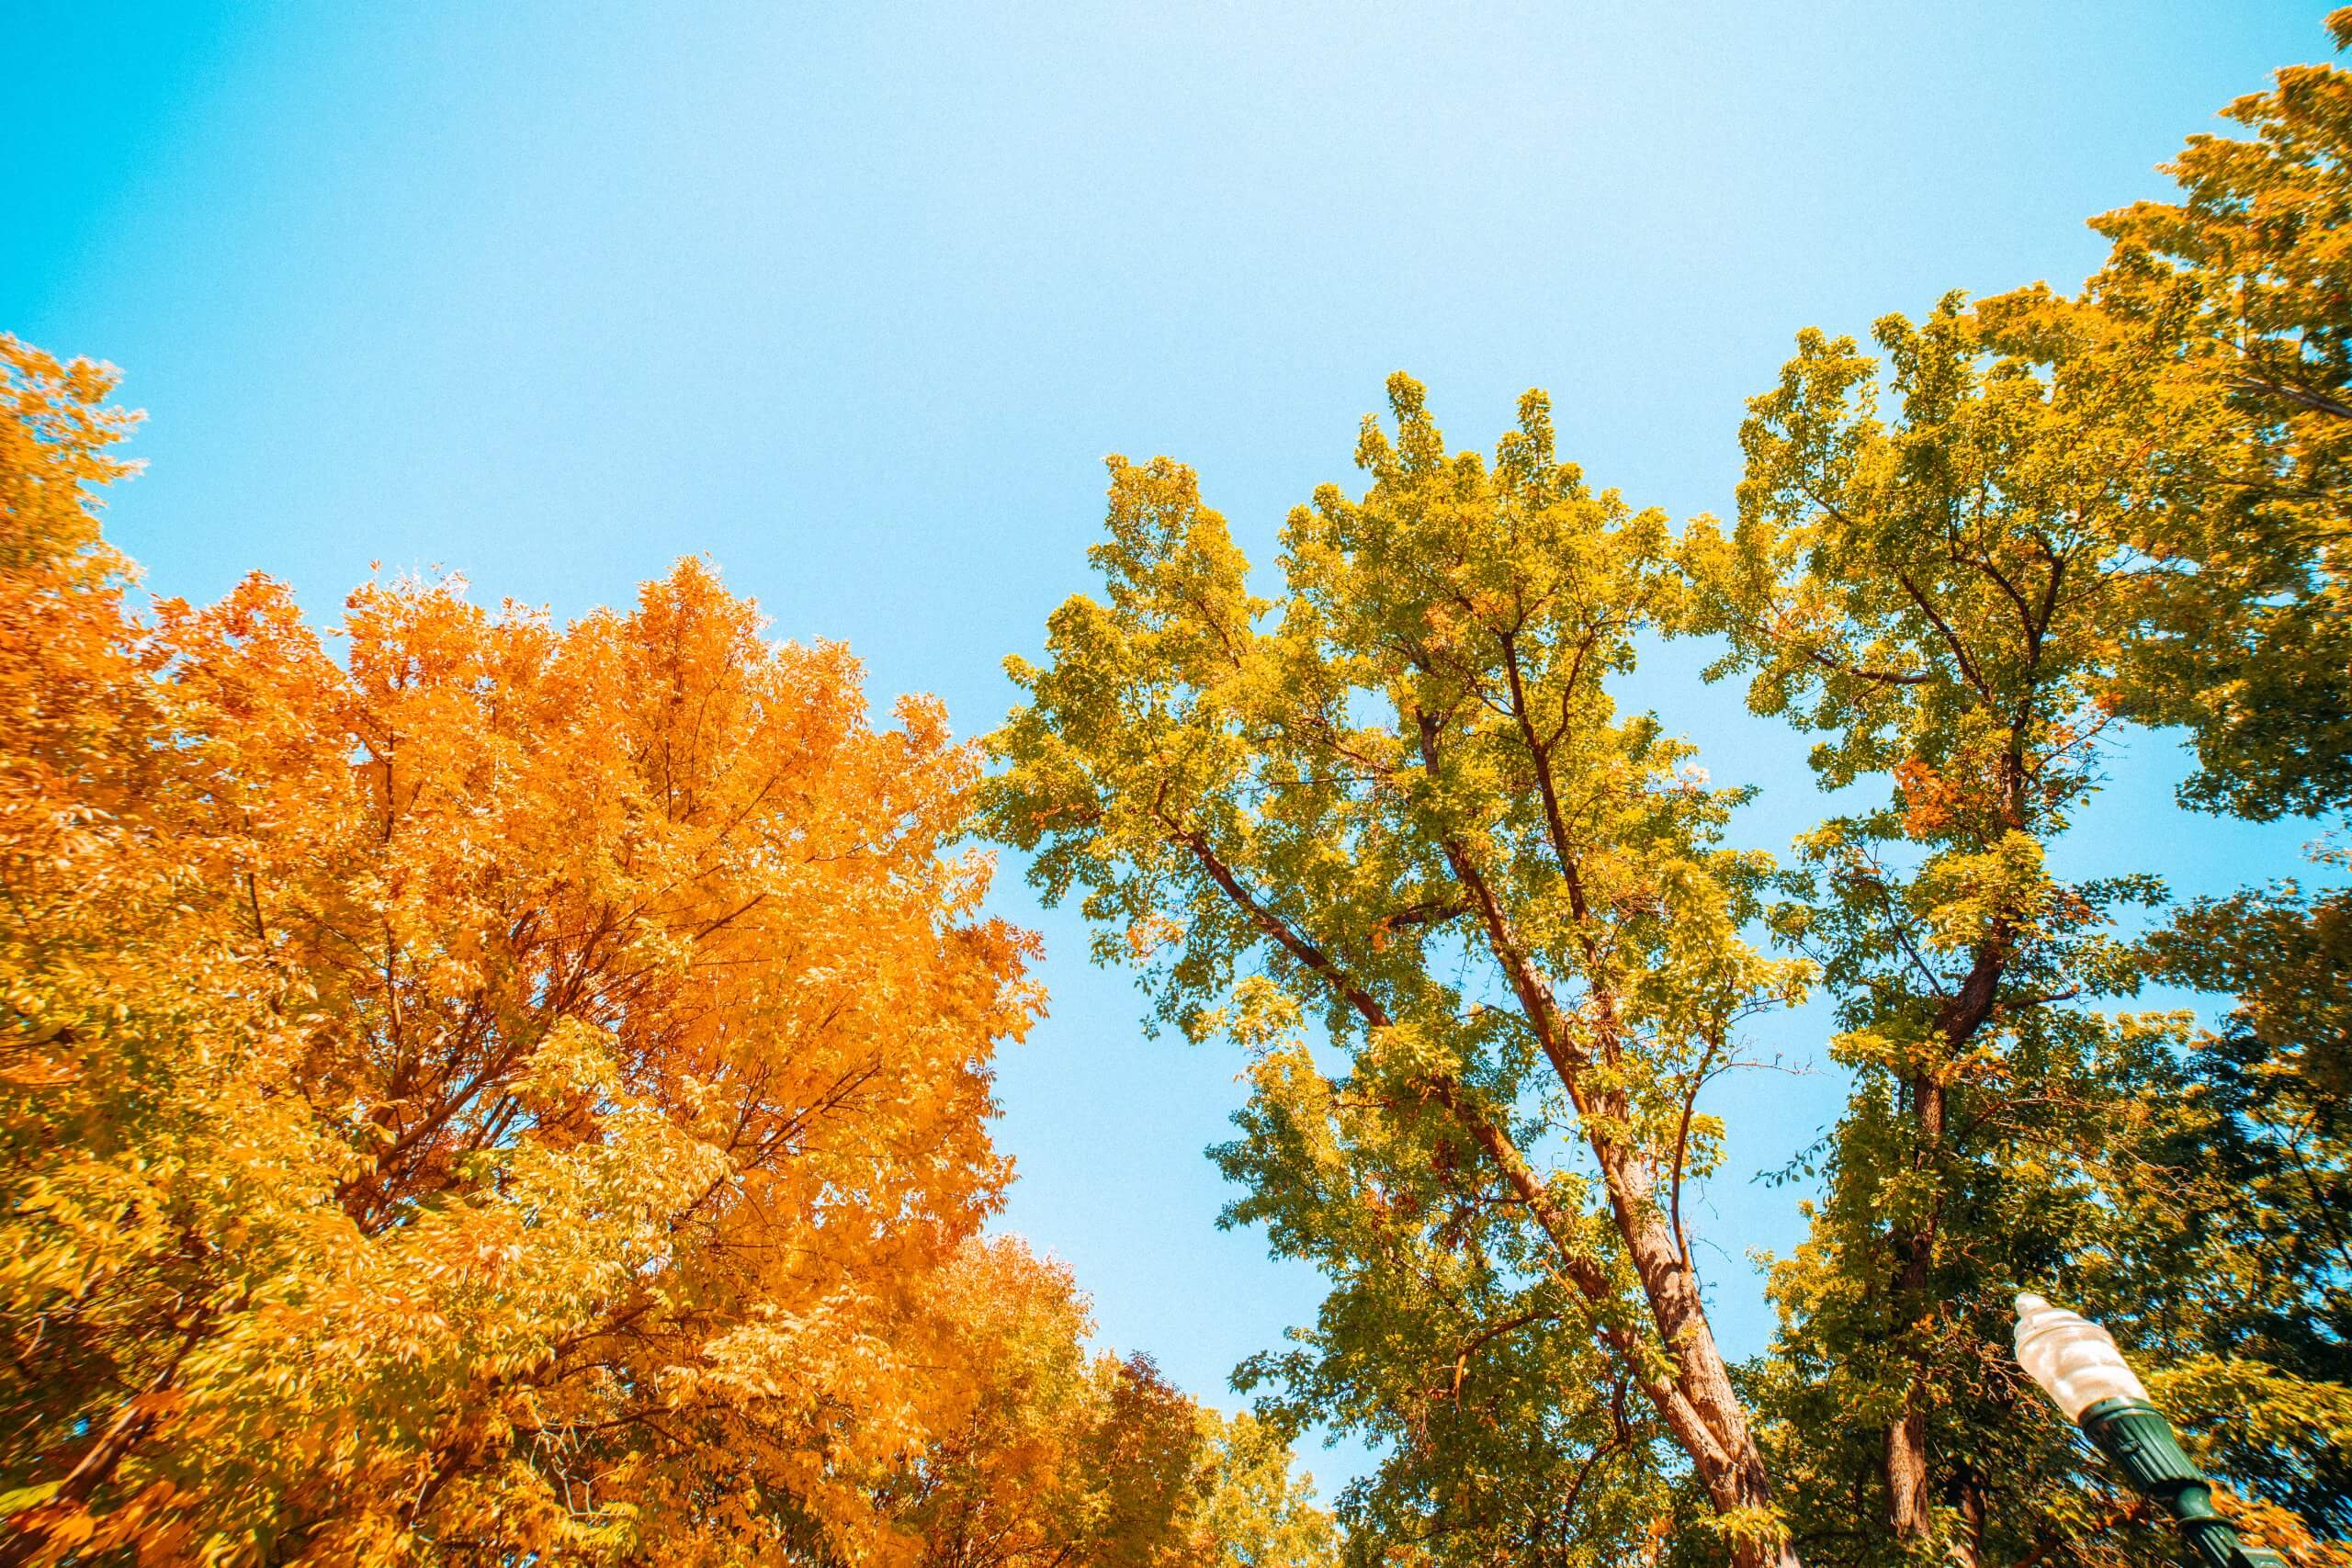 Indulge in the Feeling of Fall in Idaho